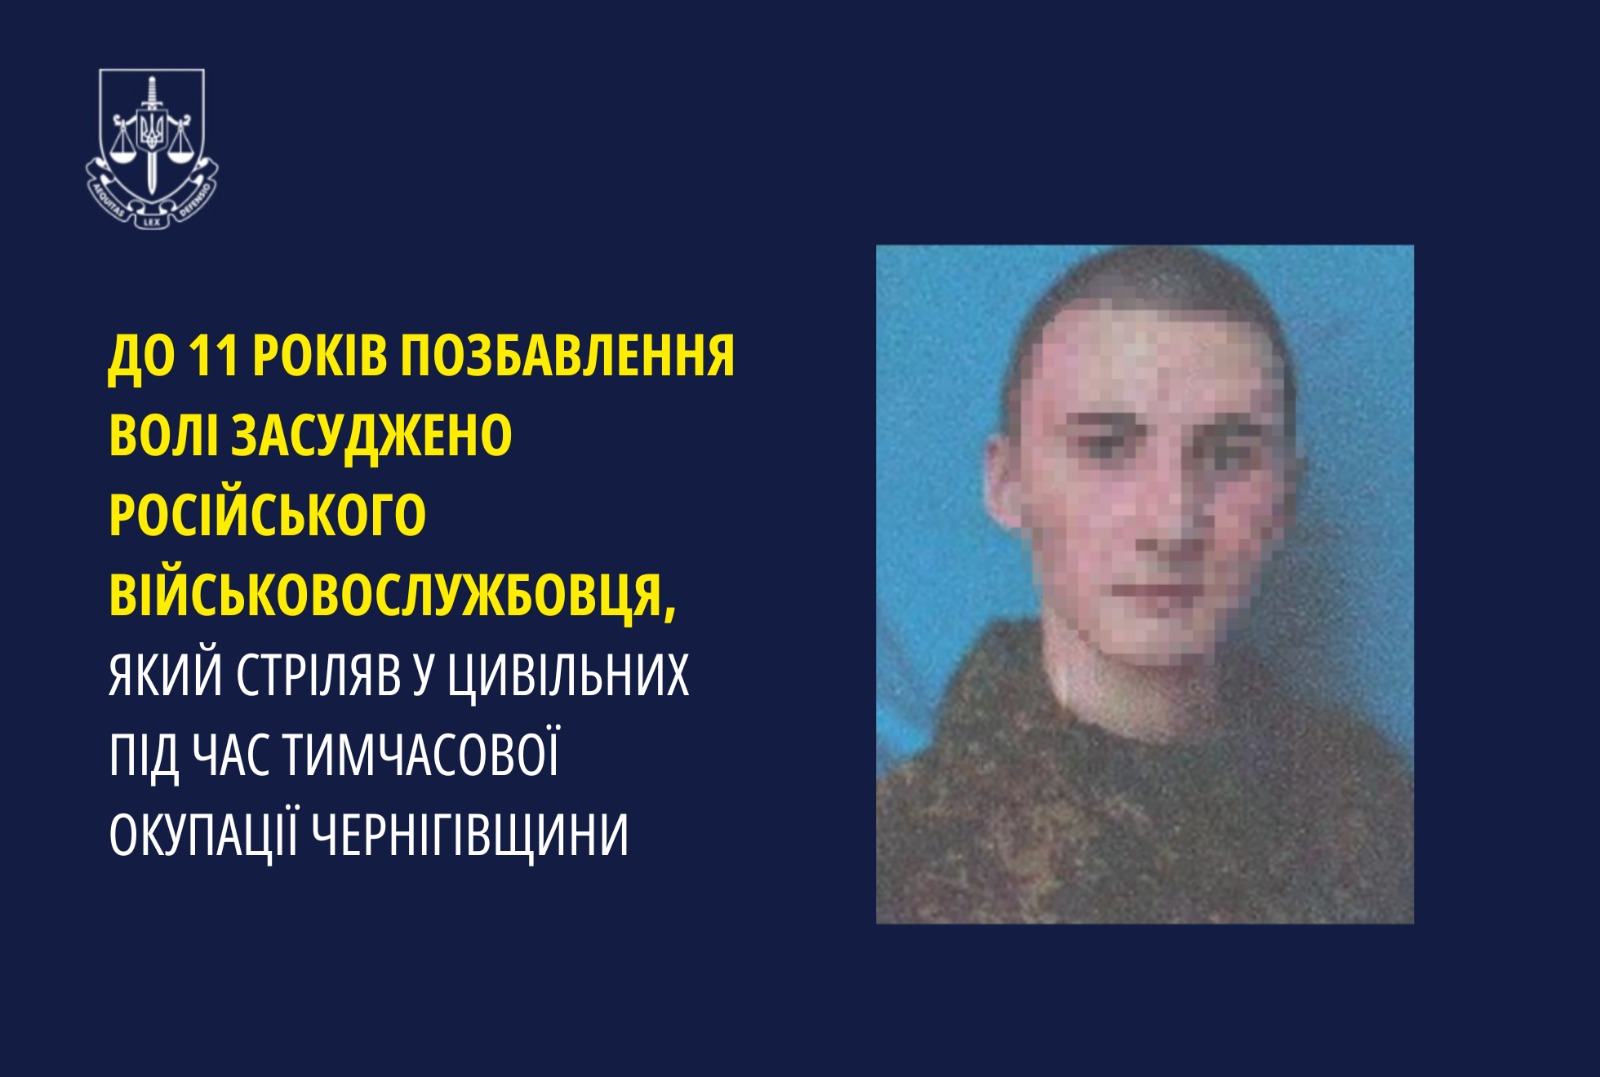 До 11 років позбавлення волі засуджено російського військовослужбовця, який стріляв у цивільних під час тимчасової окупації Чернігівщини